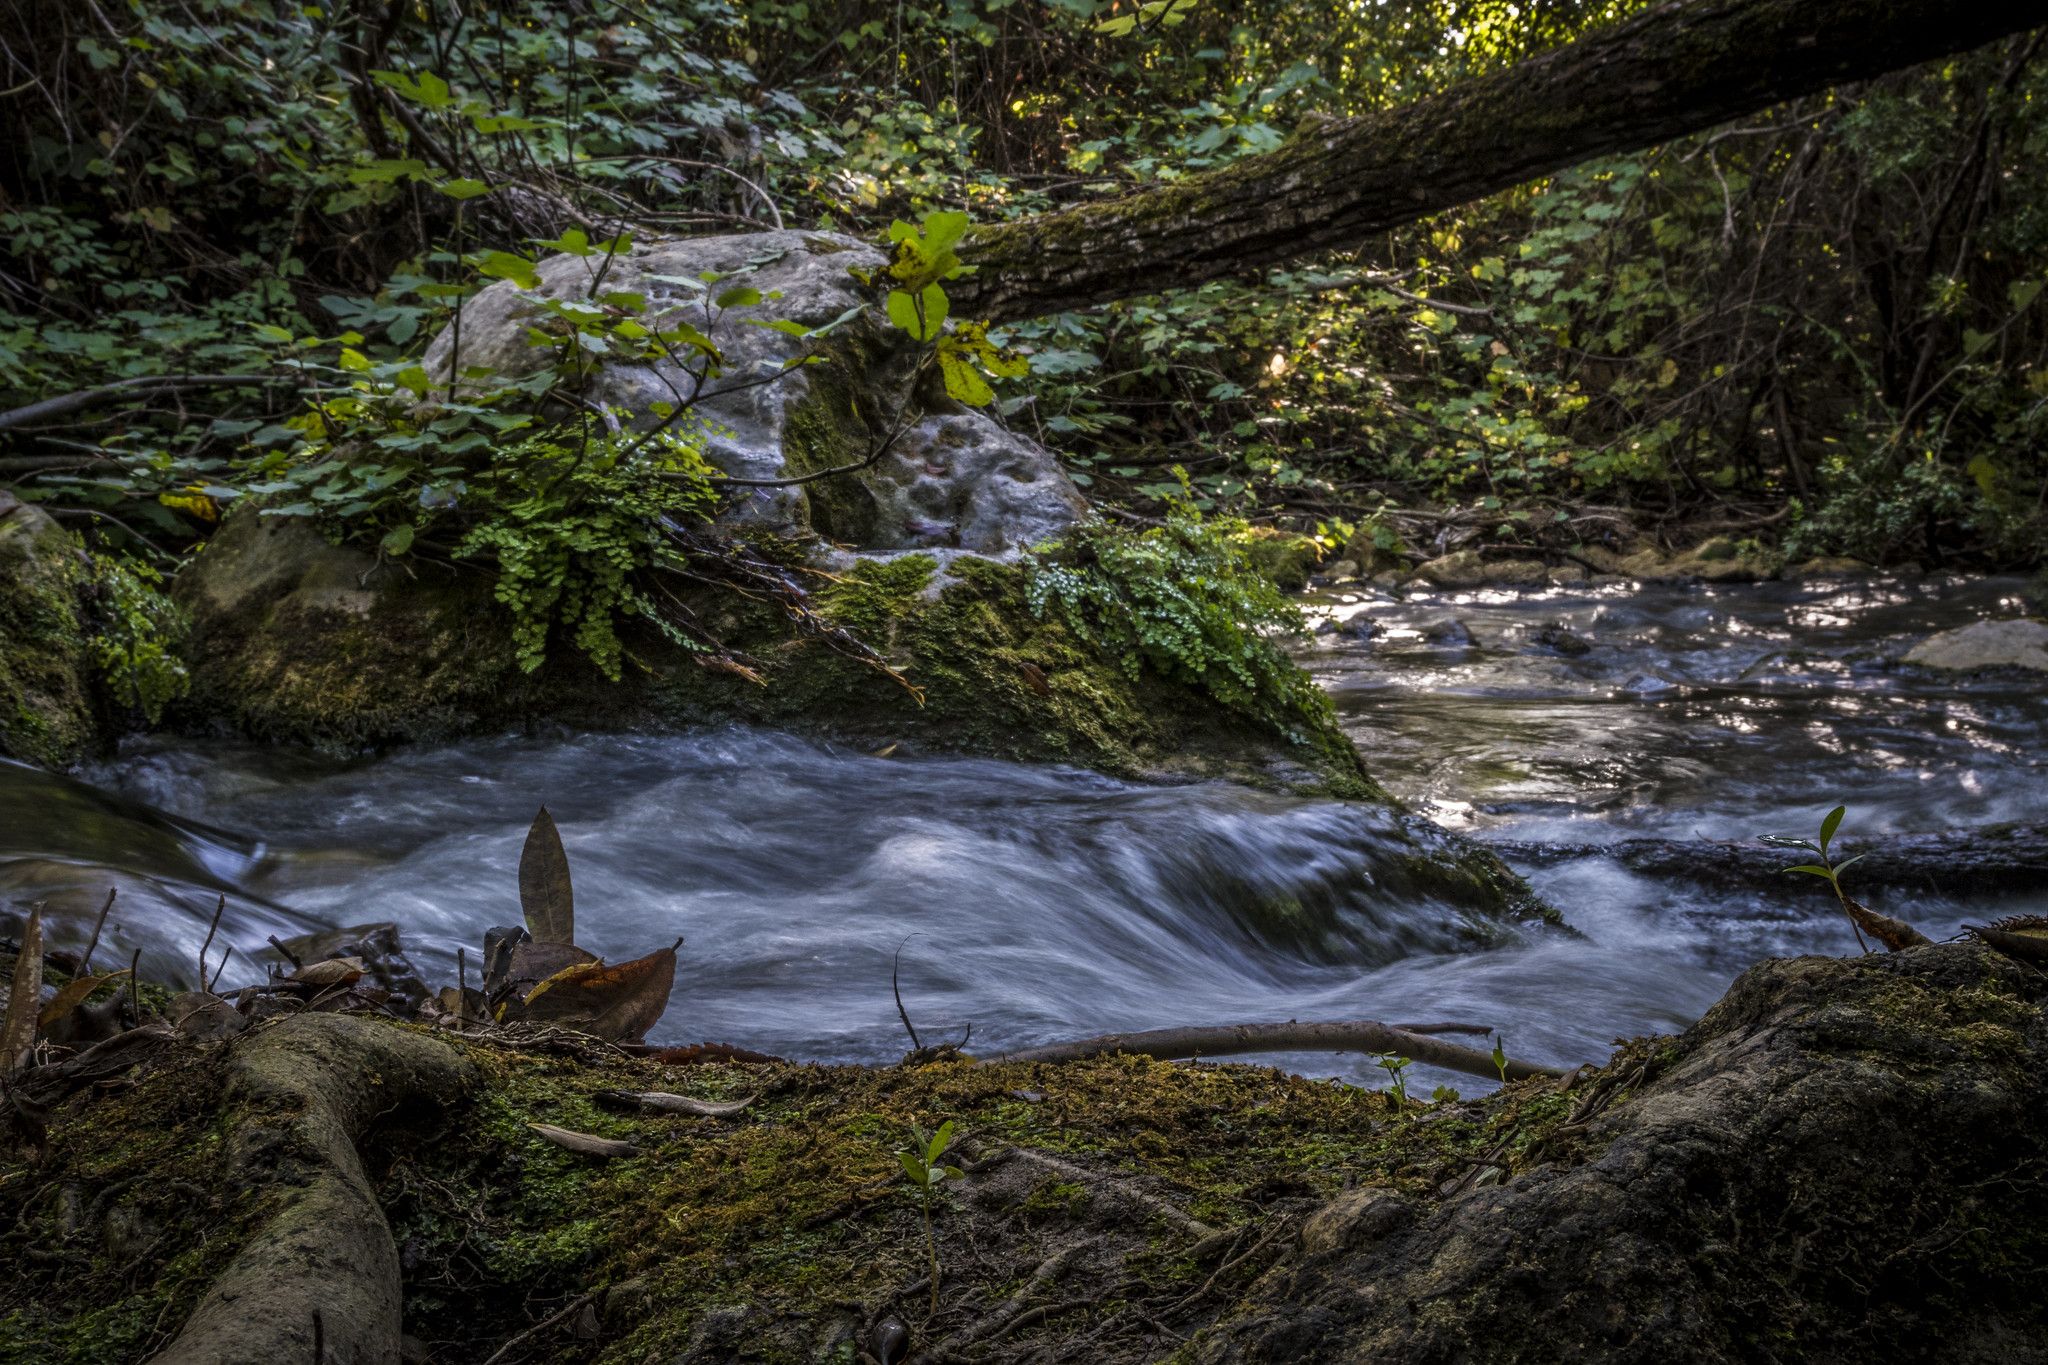 El río Majaceite, en la Sierra de Grazalema, en una imagen de Mario Naranjo Molina (Flickr.com).